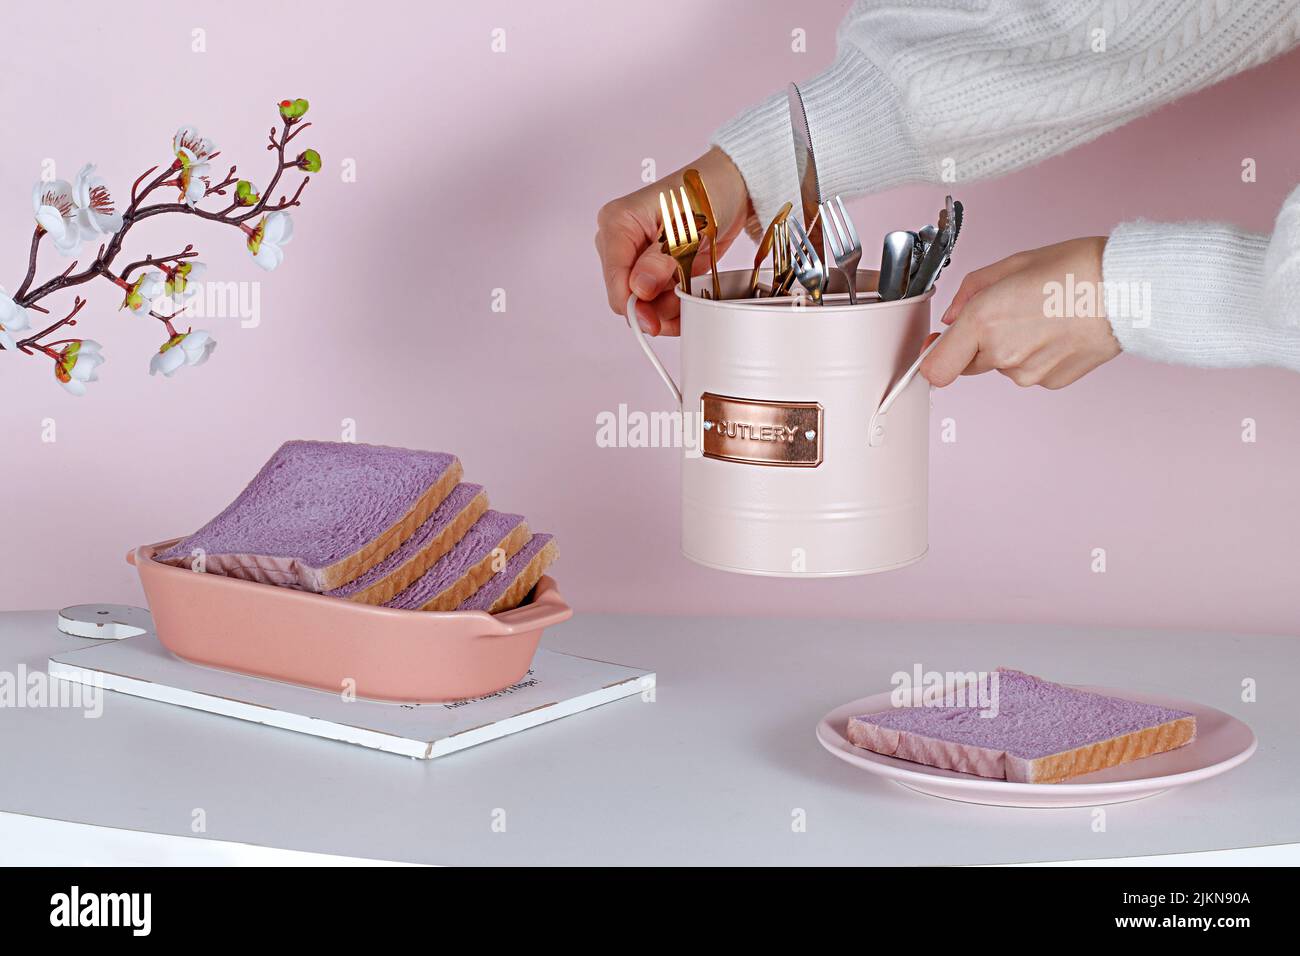 Una persona che allestisce un bel tavolo estetico con pane dolce viola, un set di posate e fiori Foto Stock